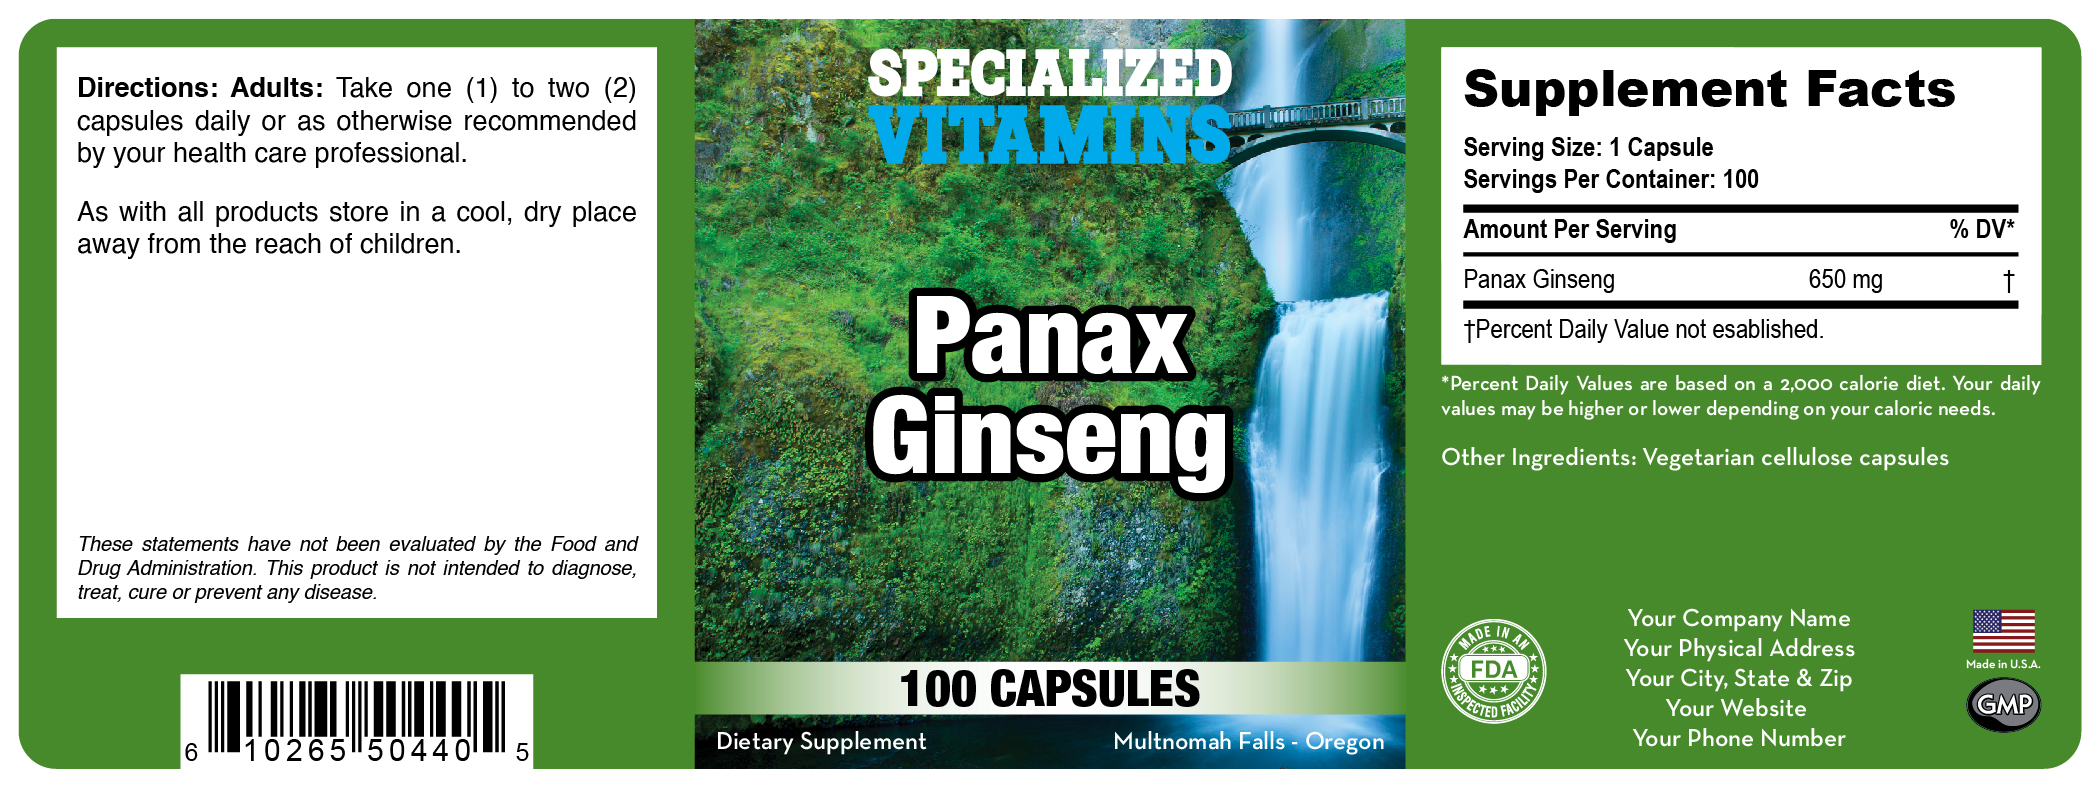 Panax (Korean) Ginseng 650 mg – 100 Capsules